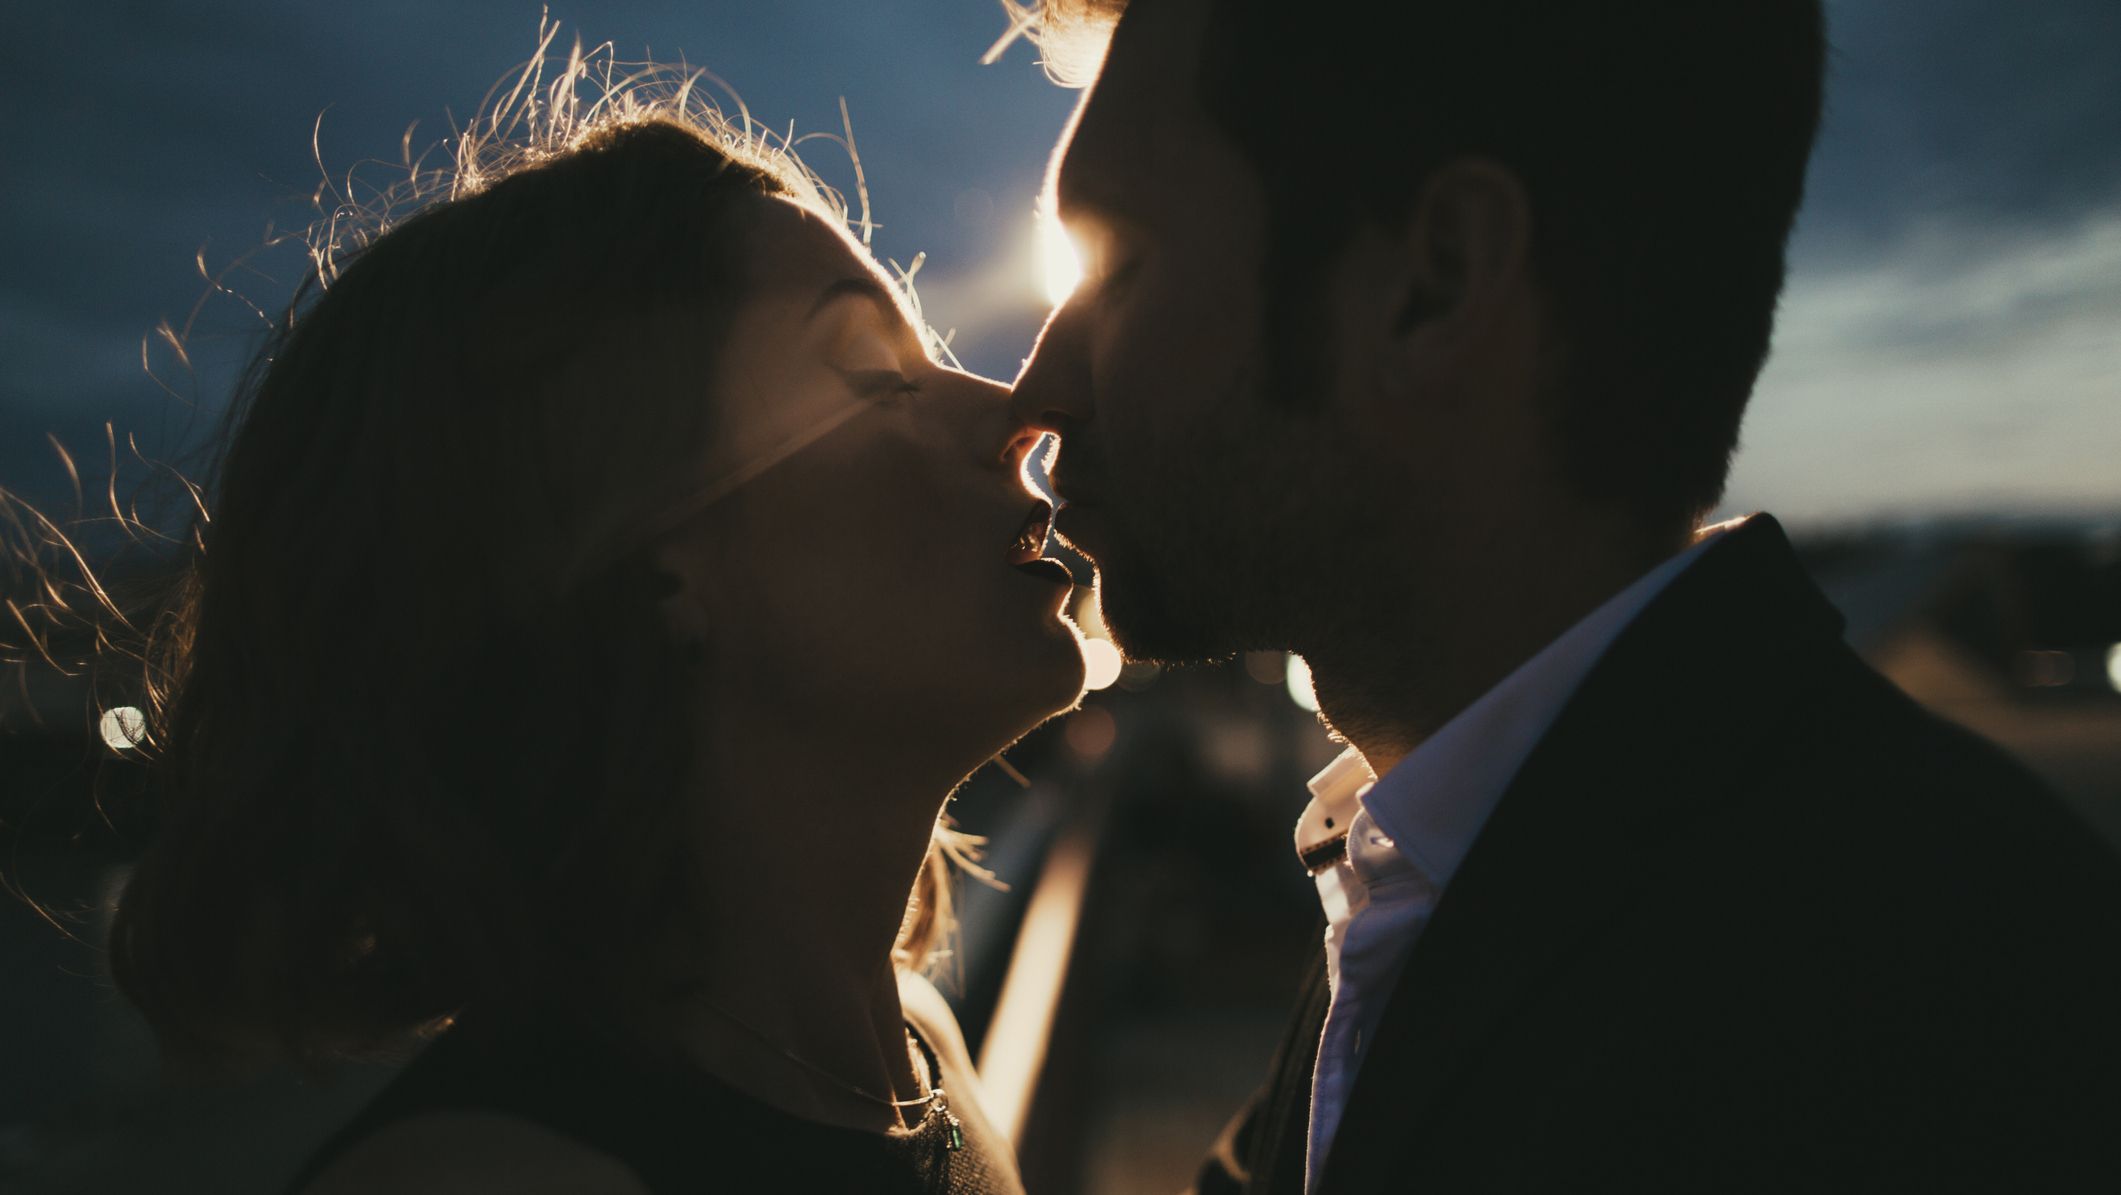 情侣们必知的十大接吻技巧 - 知乎